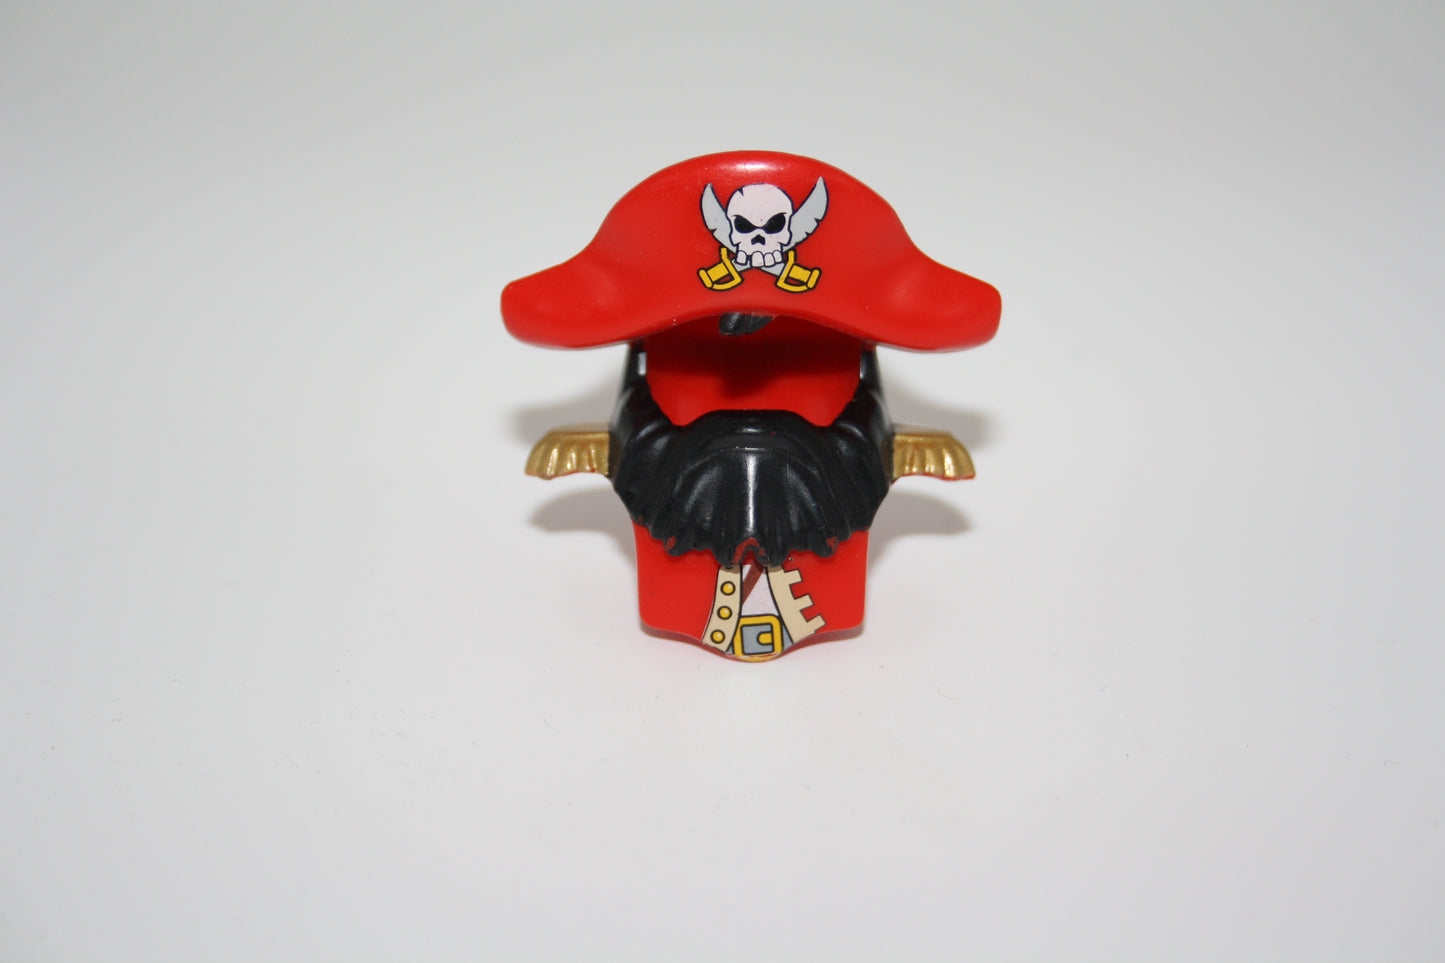 Duplo - Rüstung/Piratenmütze/Piratenhut - rot - Zubehör/Accessoire